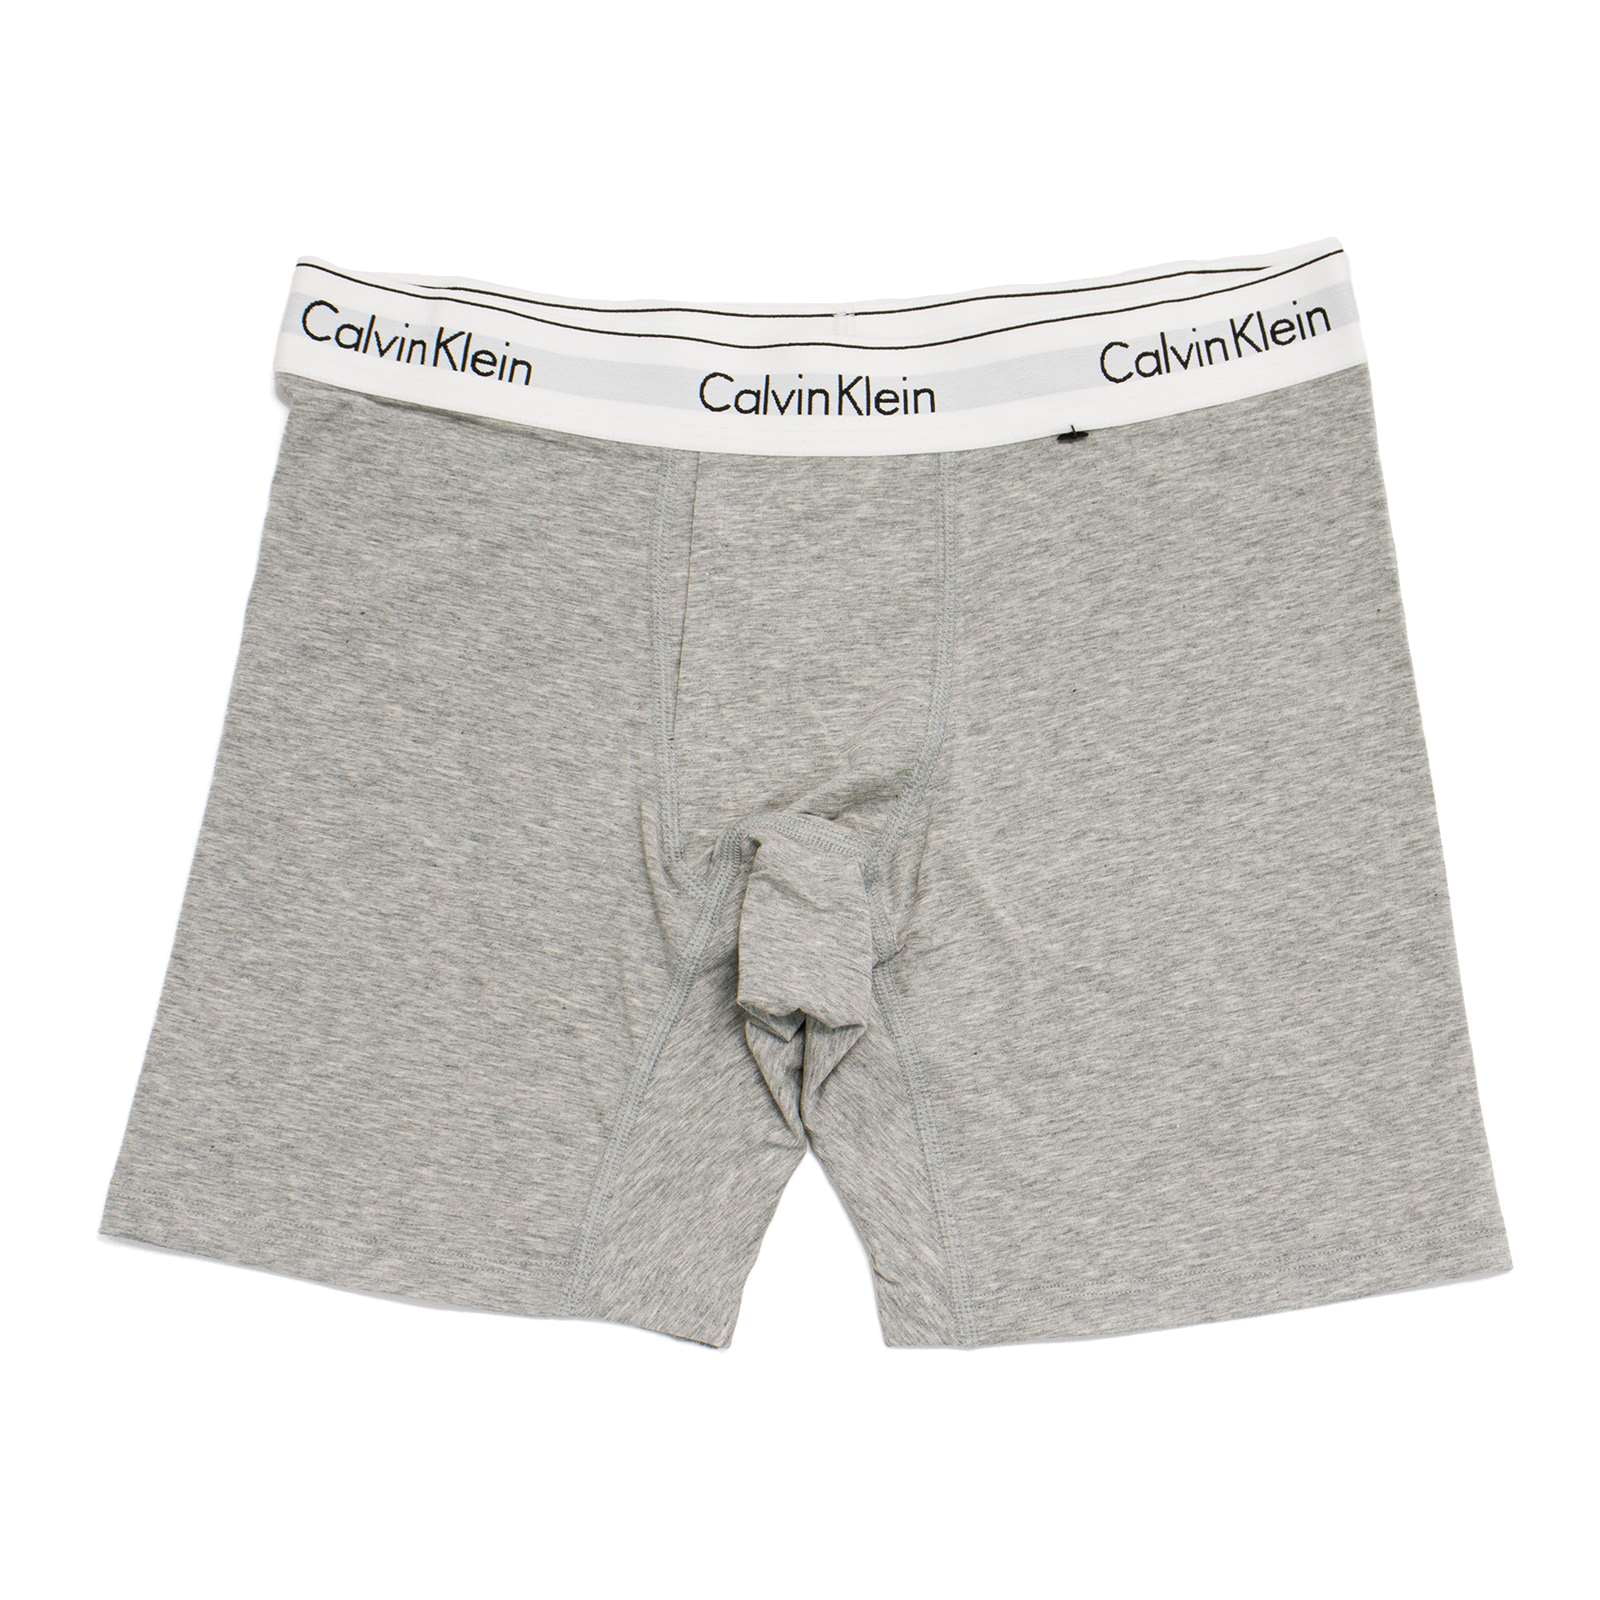 Calvin Klein Women's Modern Cotton Boxer Brief, Grey Heather,S - US 